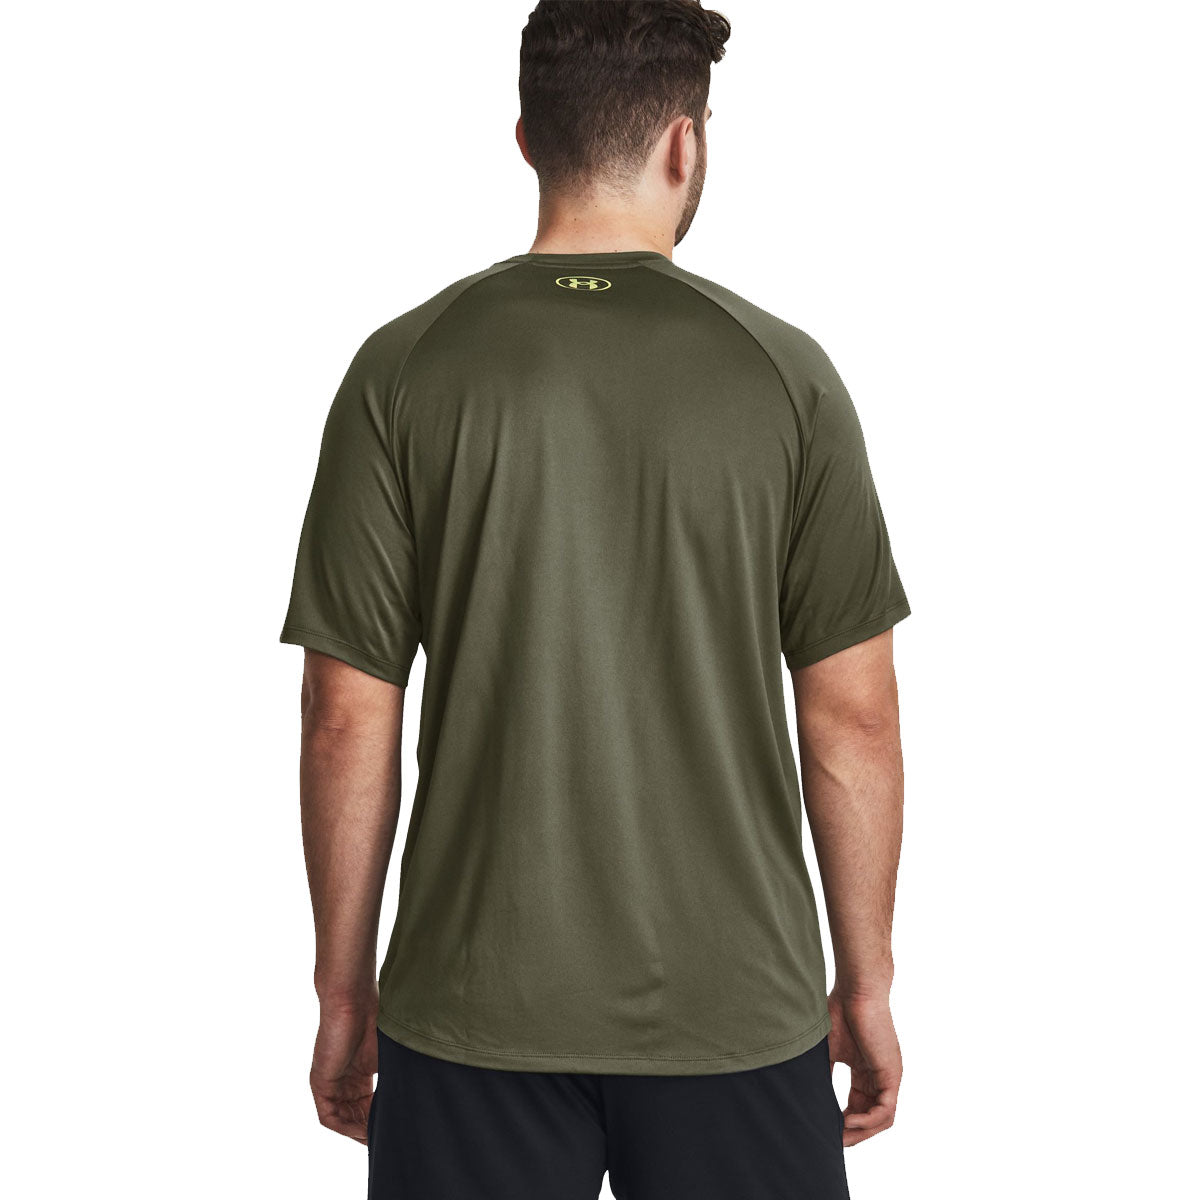 Under Armour Tech Print Fill Short Sleeve Tee - Mens - Marine Green/Speed Green